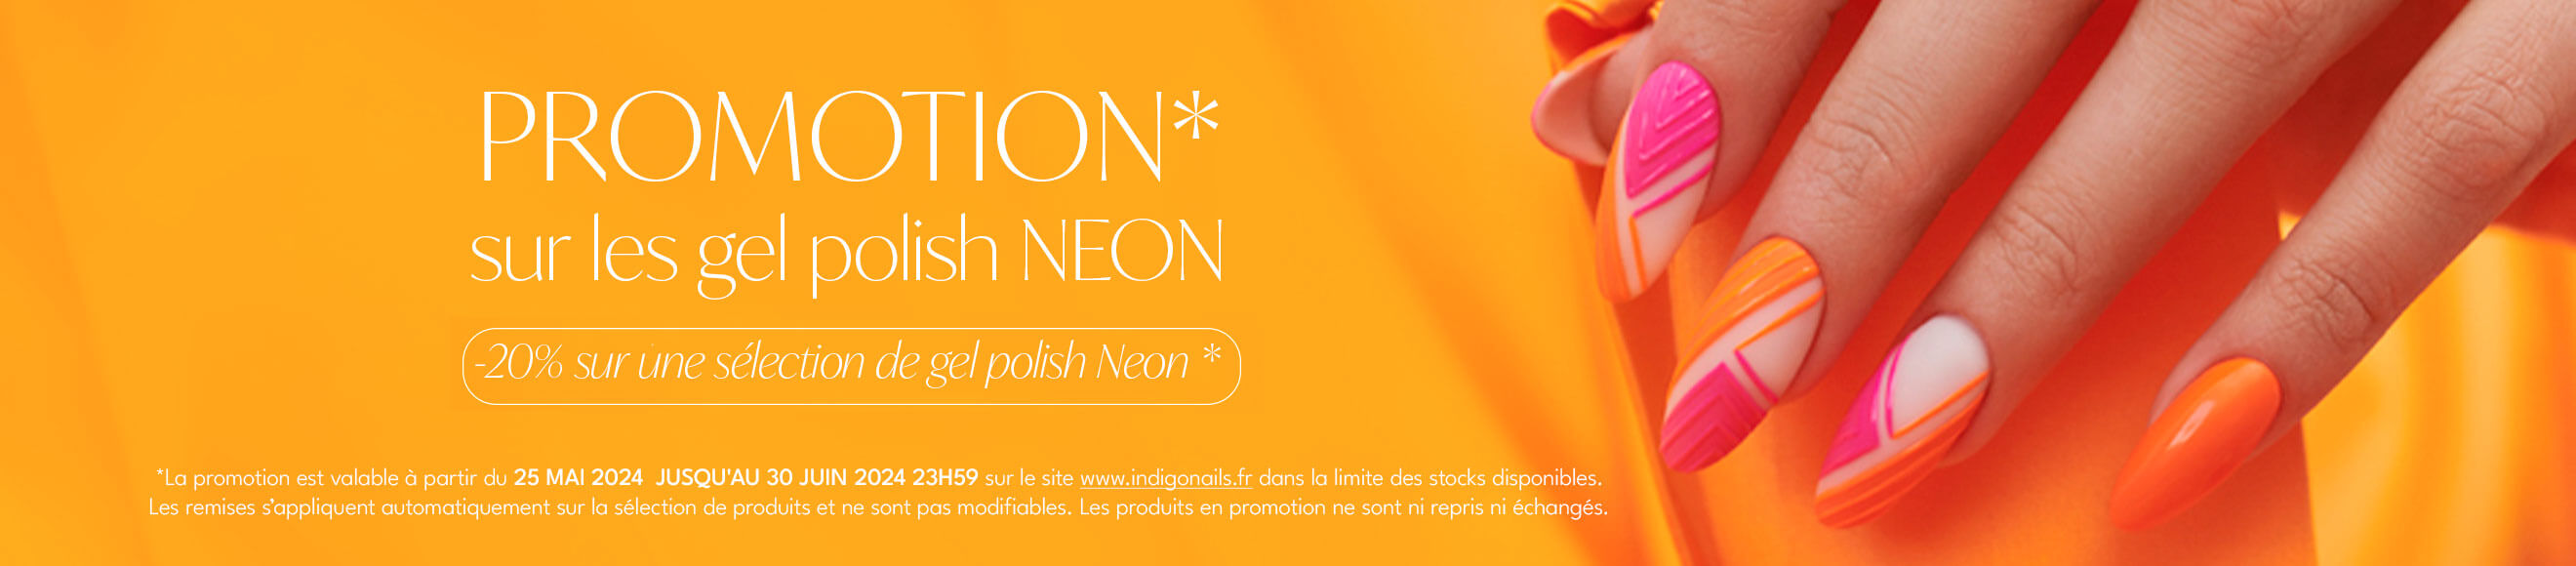 Promotion Neon 2024 - Indigo Nails France